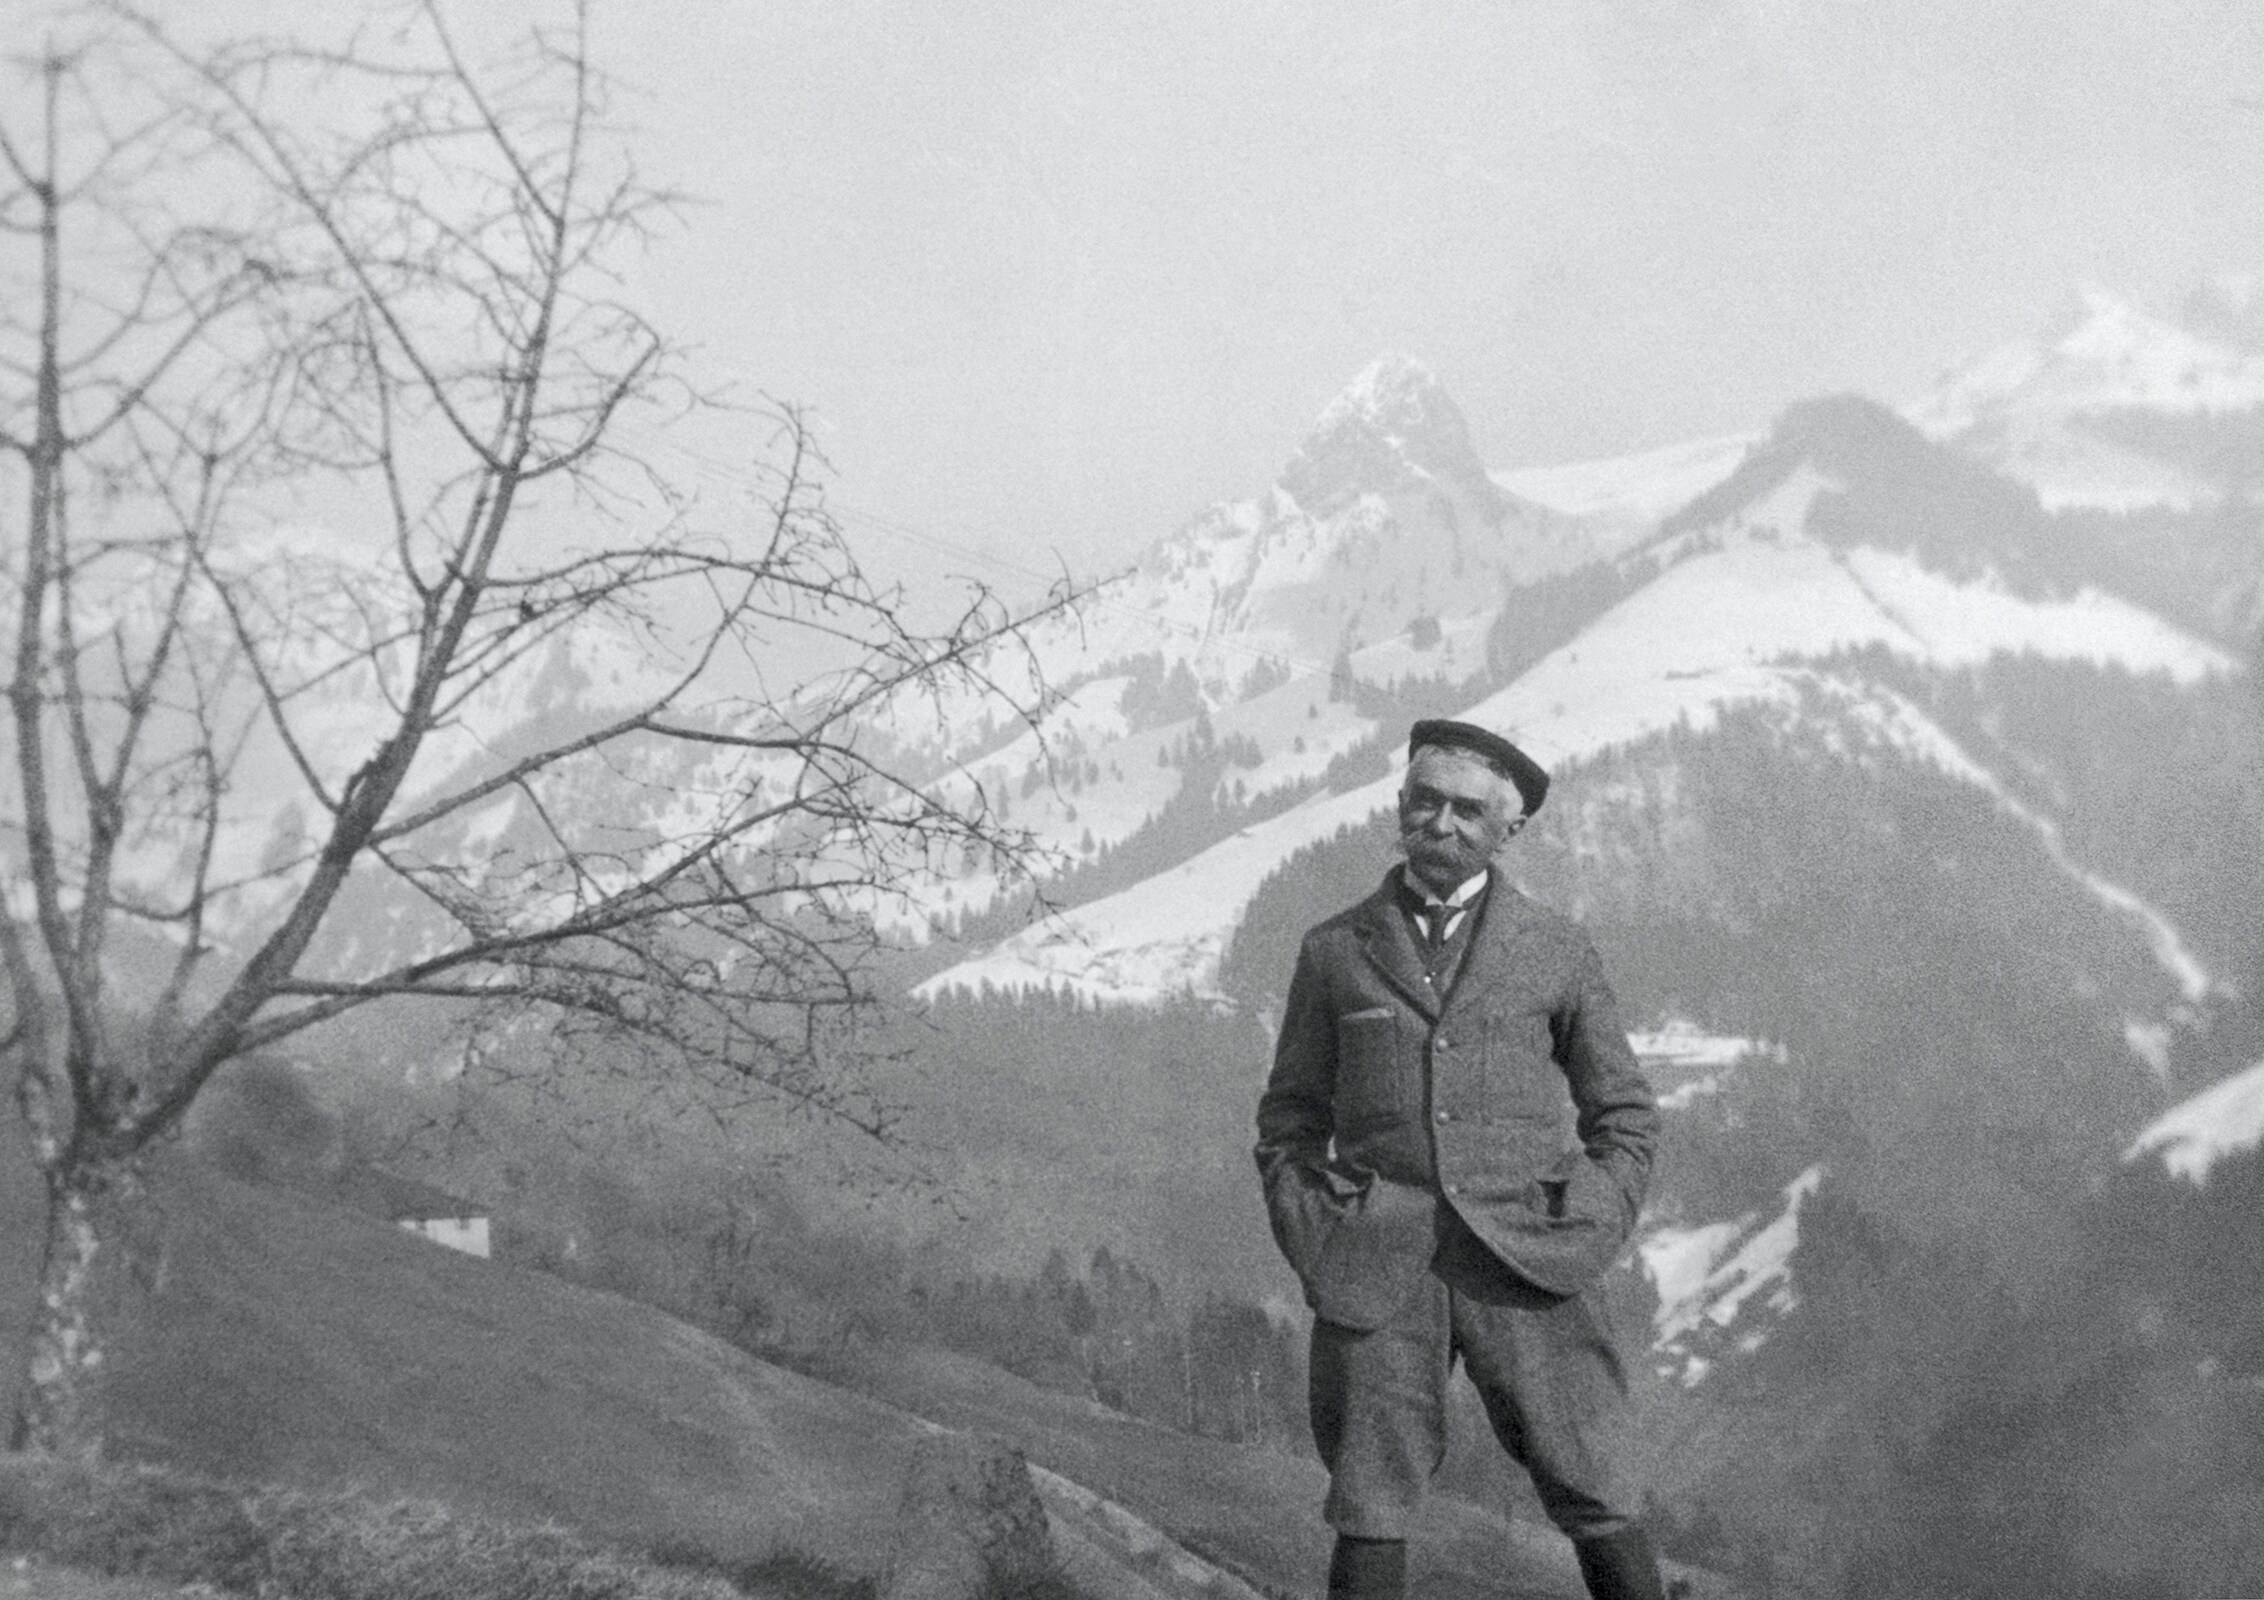 Baron Pierre de COUBERTIN in the Alps.